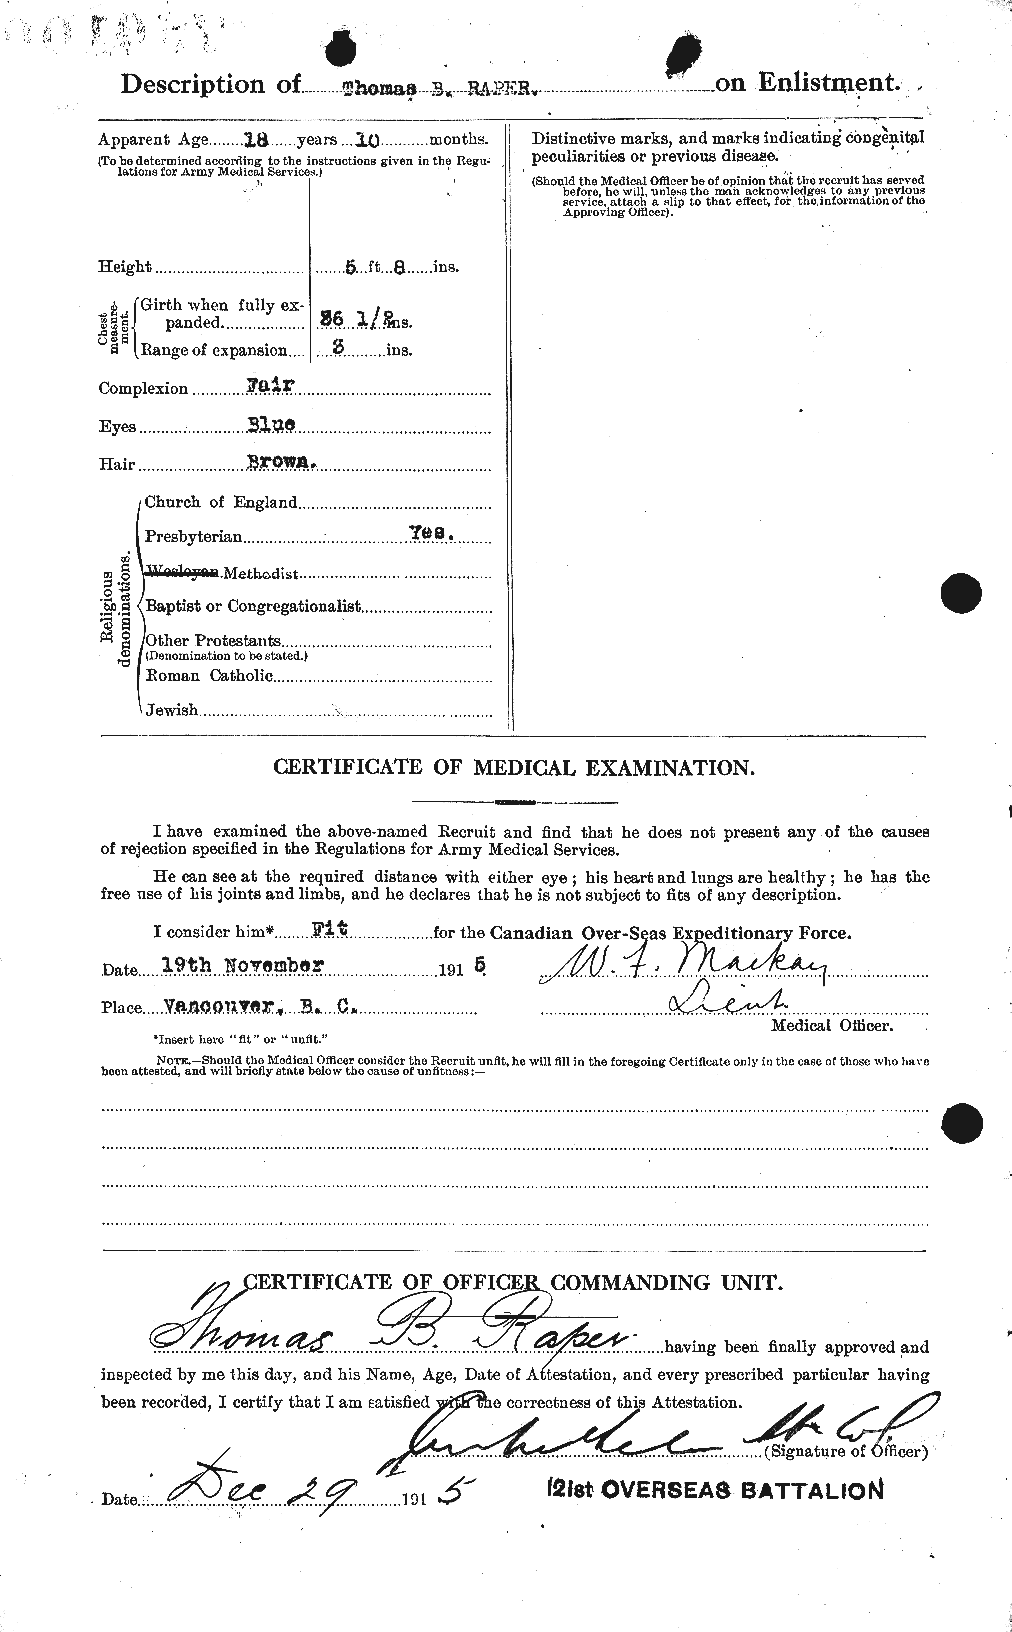 Dossiers du Personnel de la Première Guerre mondiale - CEC 594961b